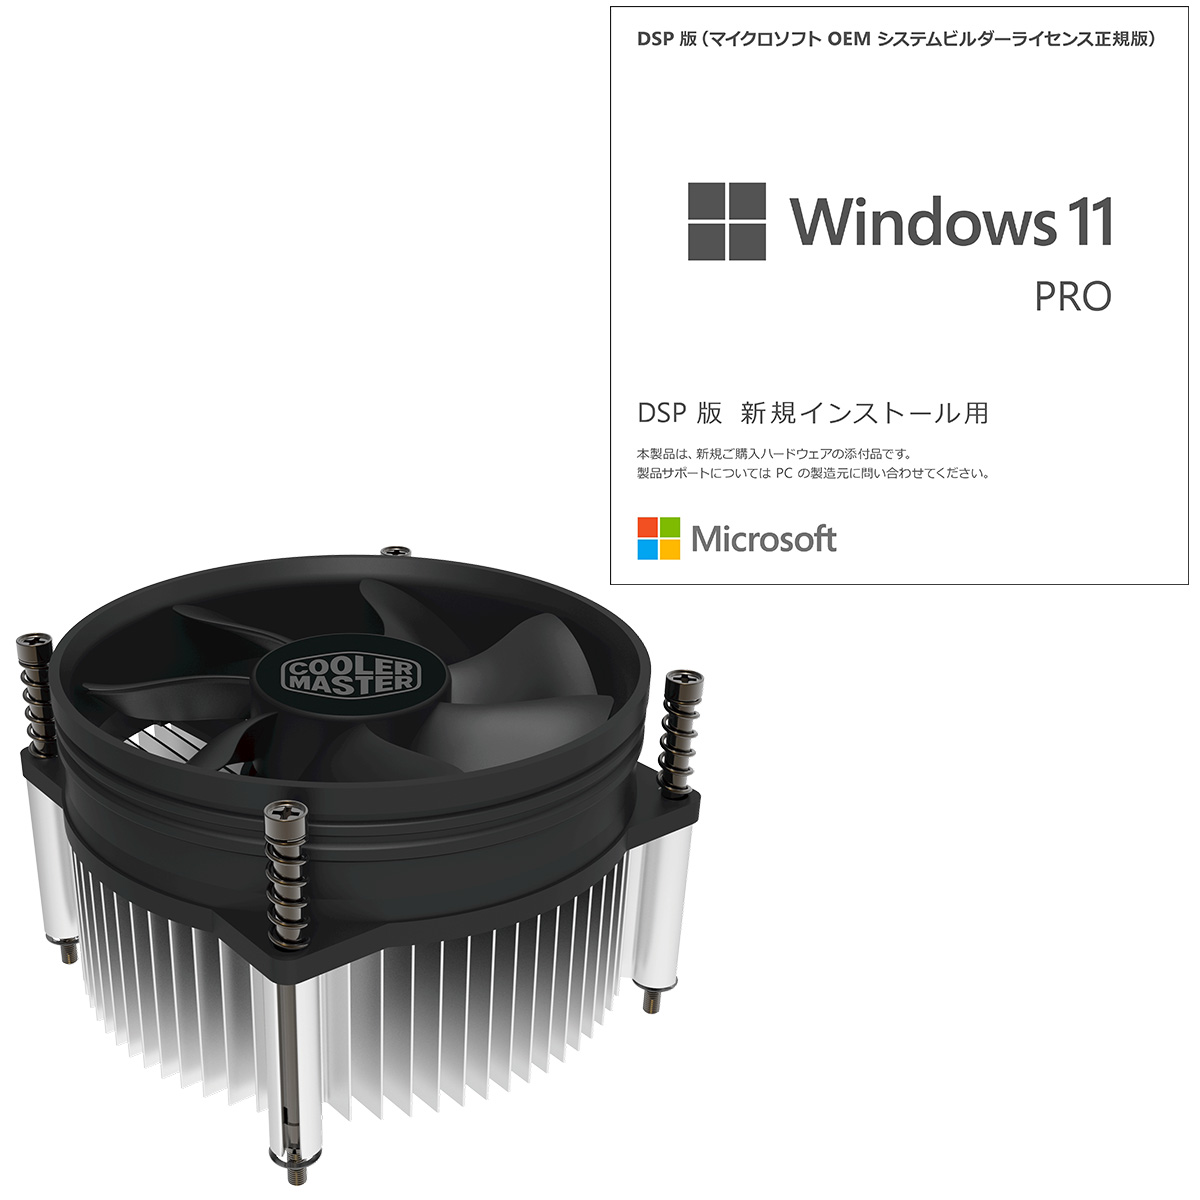 【送料無料】Microsoft Windows 11 Pro 64bit 日本語版 DSP DVD CPUクーラーセット FQC-10539/NP